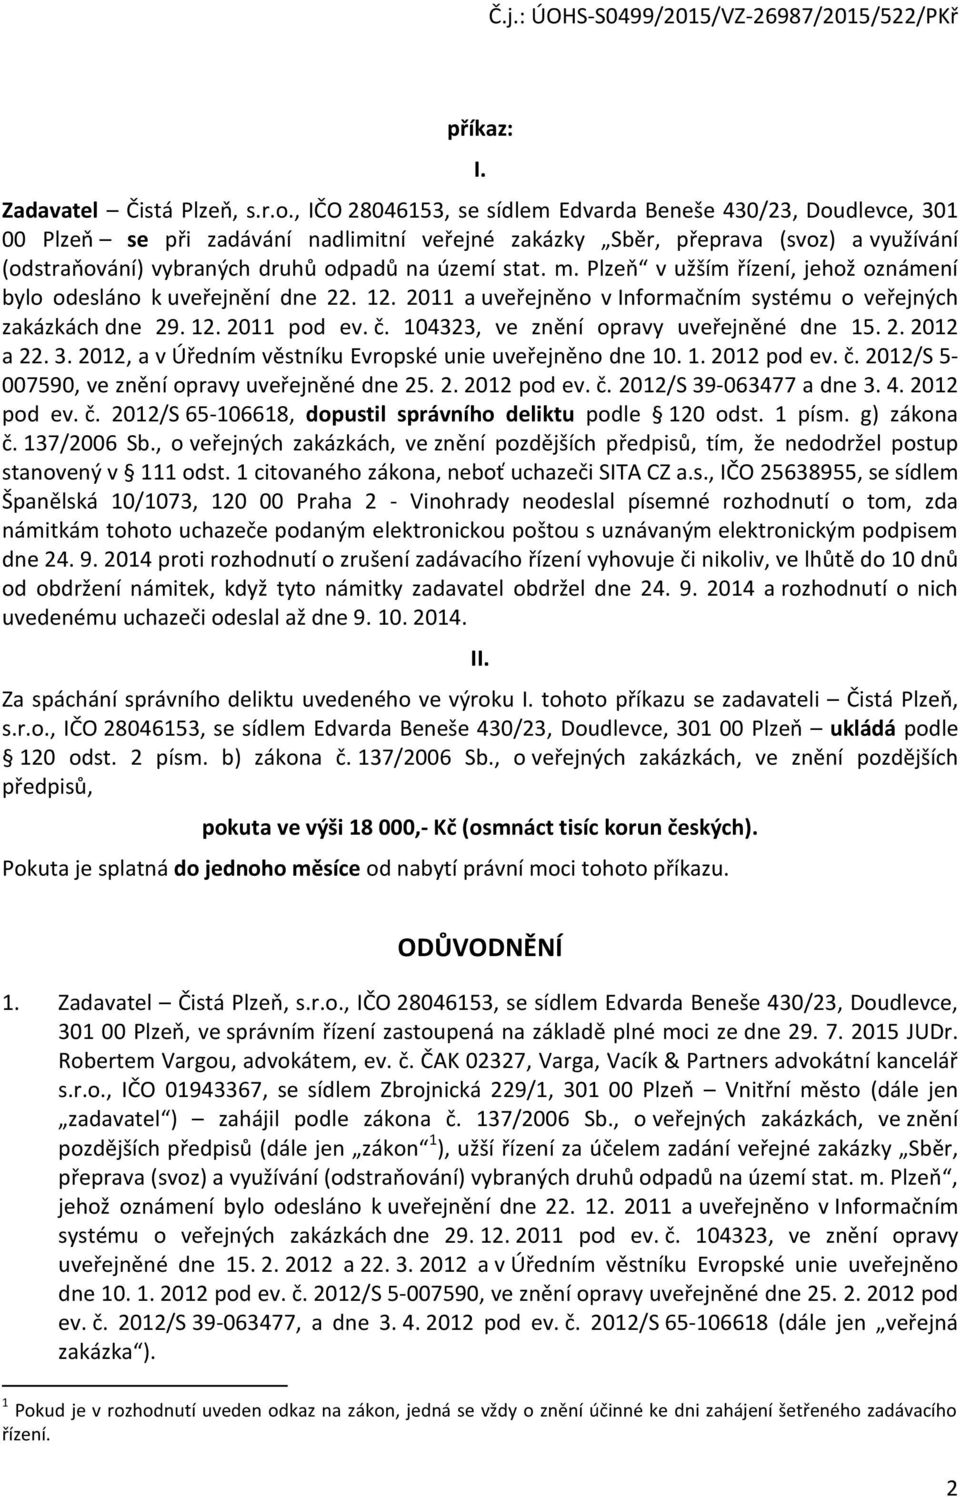 stat. m. Plzeň v užším řízení, jehož oznámení bylo odesláno k uveřejnění dne 22. 12. 2011 a uveřejněno v Informačním systému o veřejných zakázkách dne 29. 12. 2011 pod ev. č.